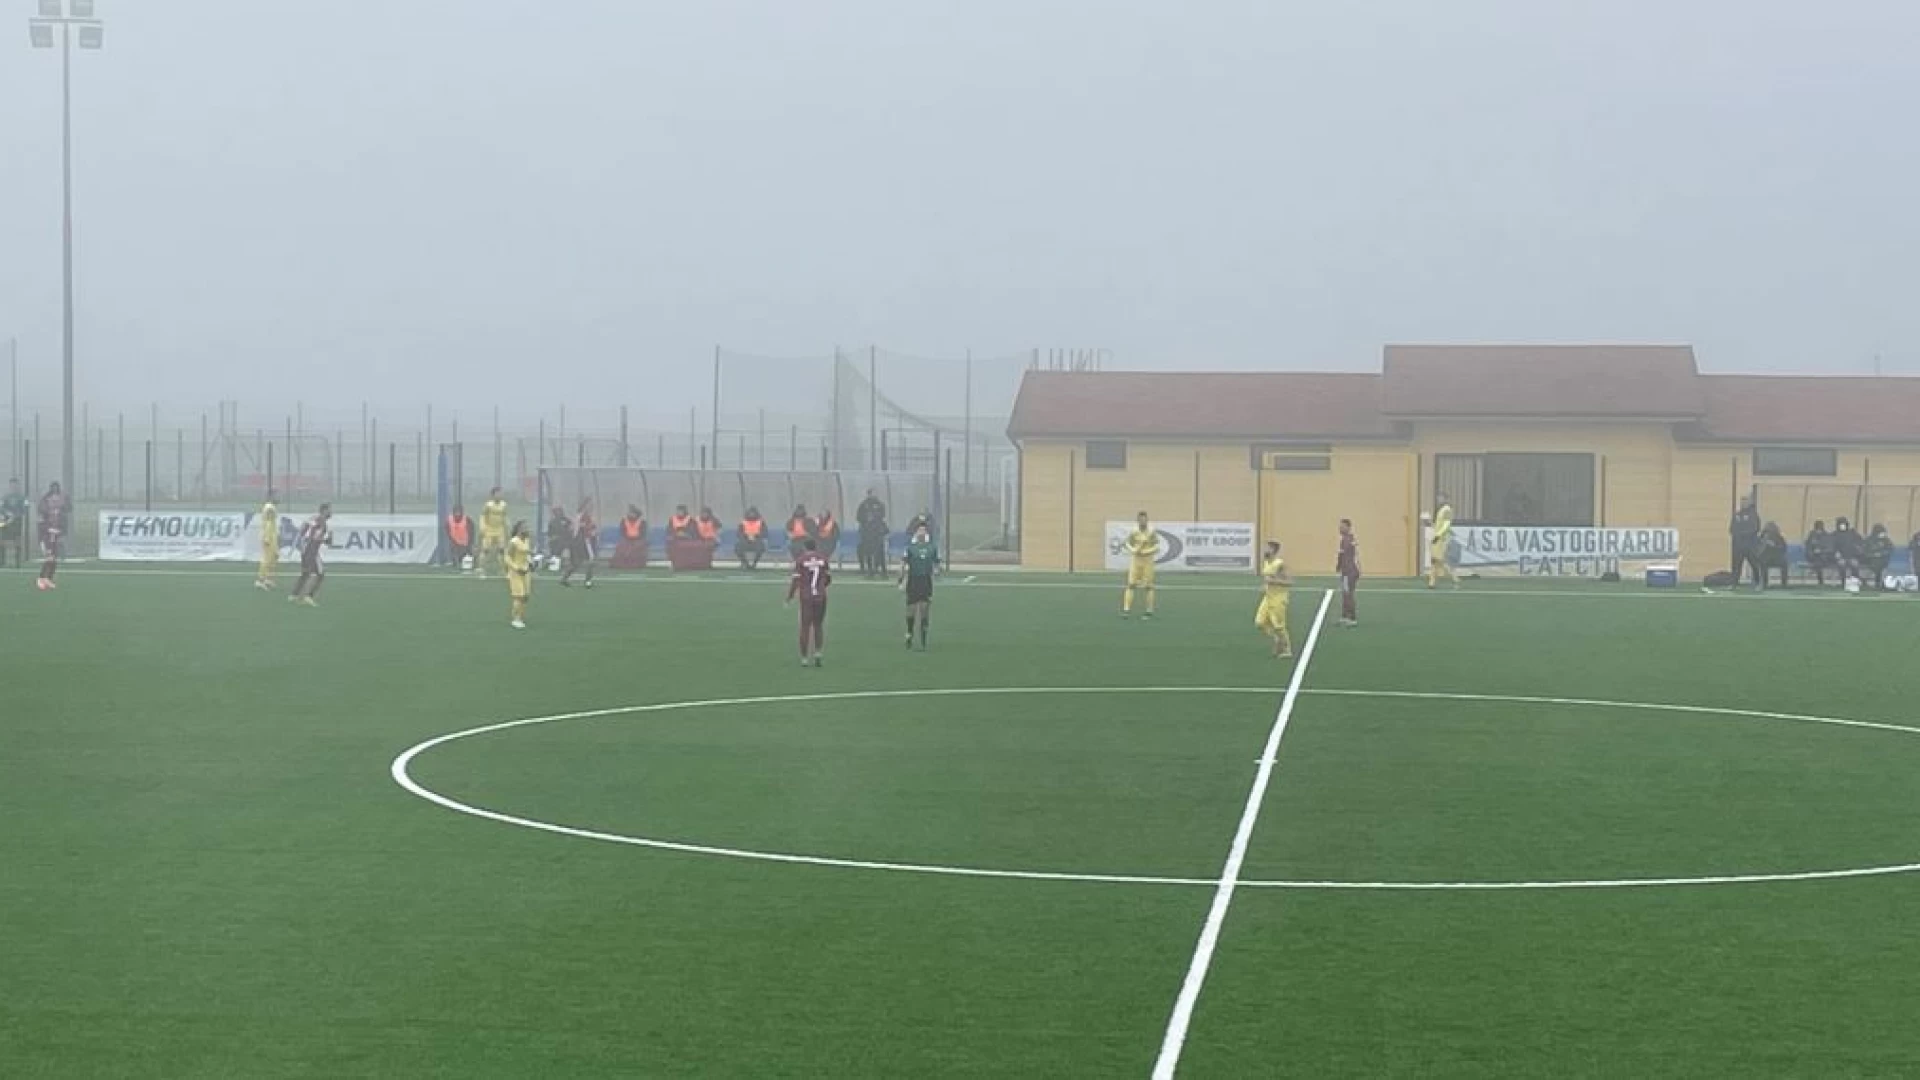 Serie D, girone F: rinviata la gara del Vastogirardi contro il Castelnuovo Vomano in programma domenica 23 gennaio.